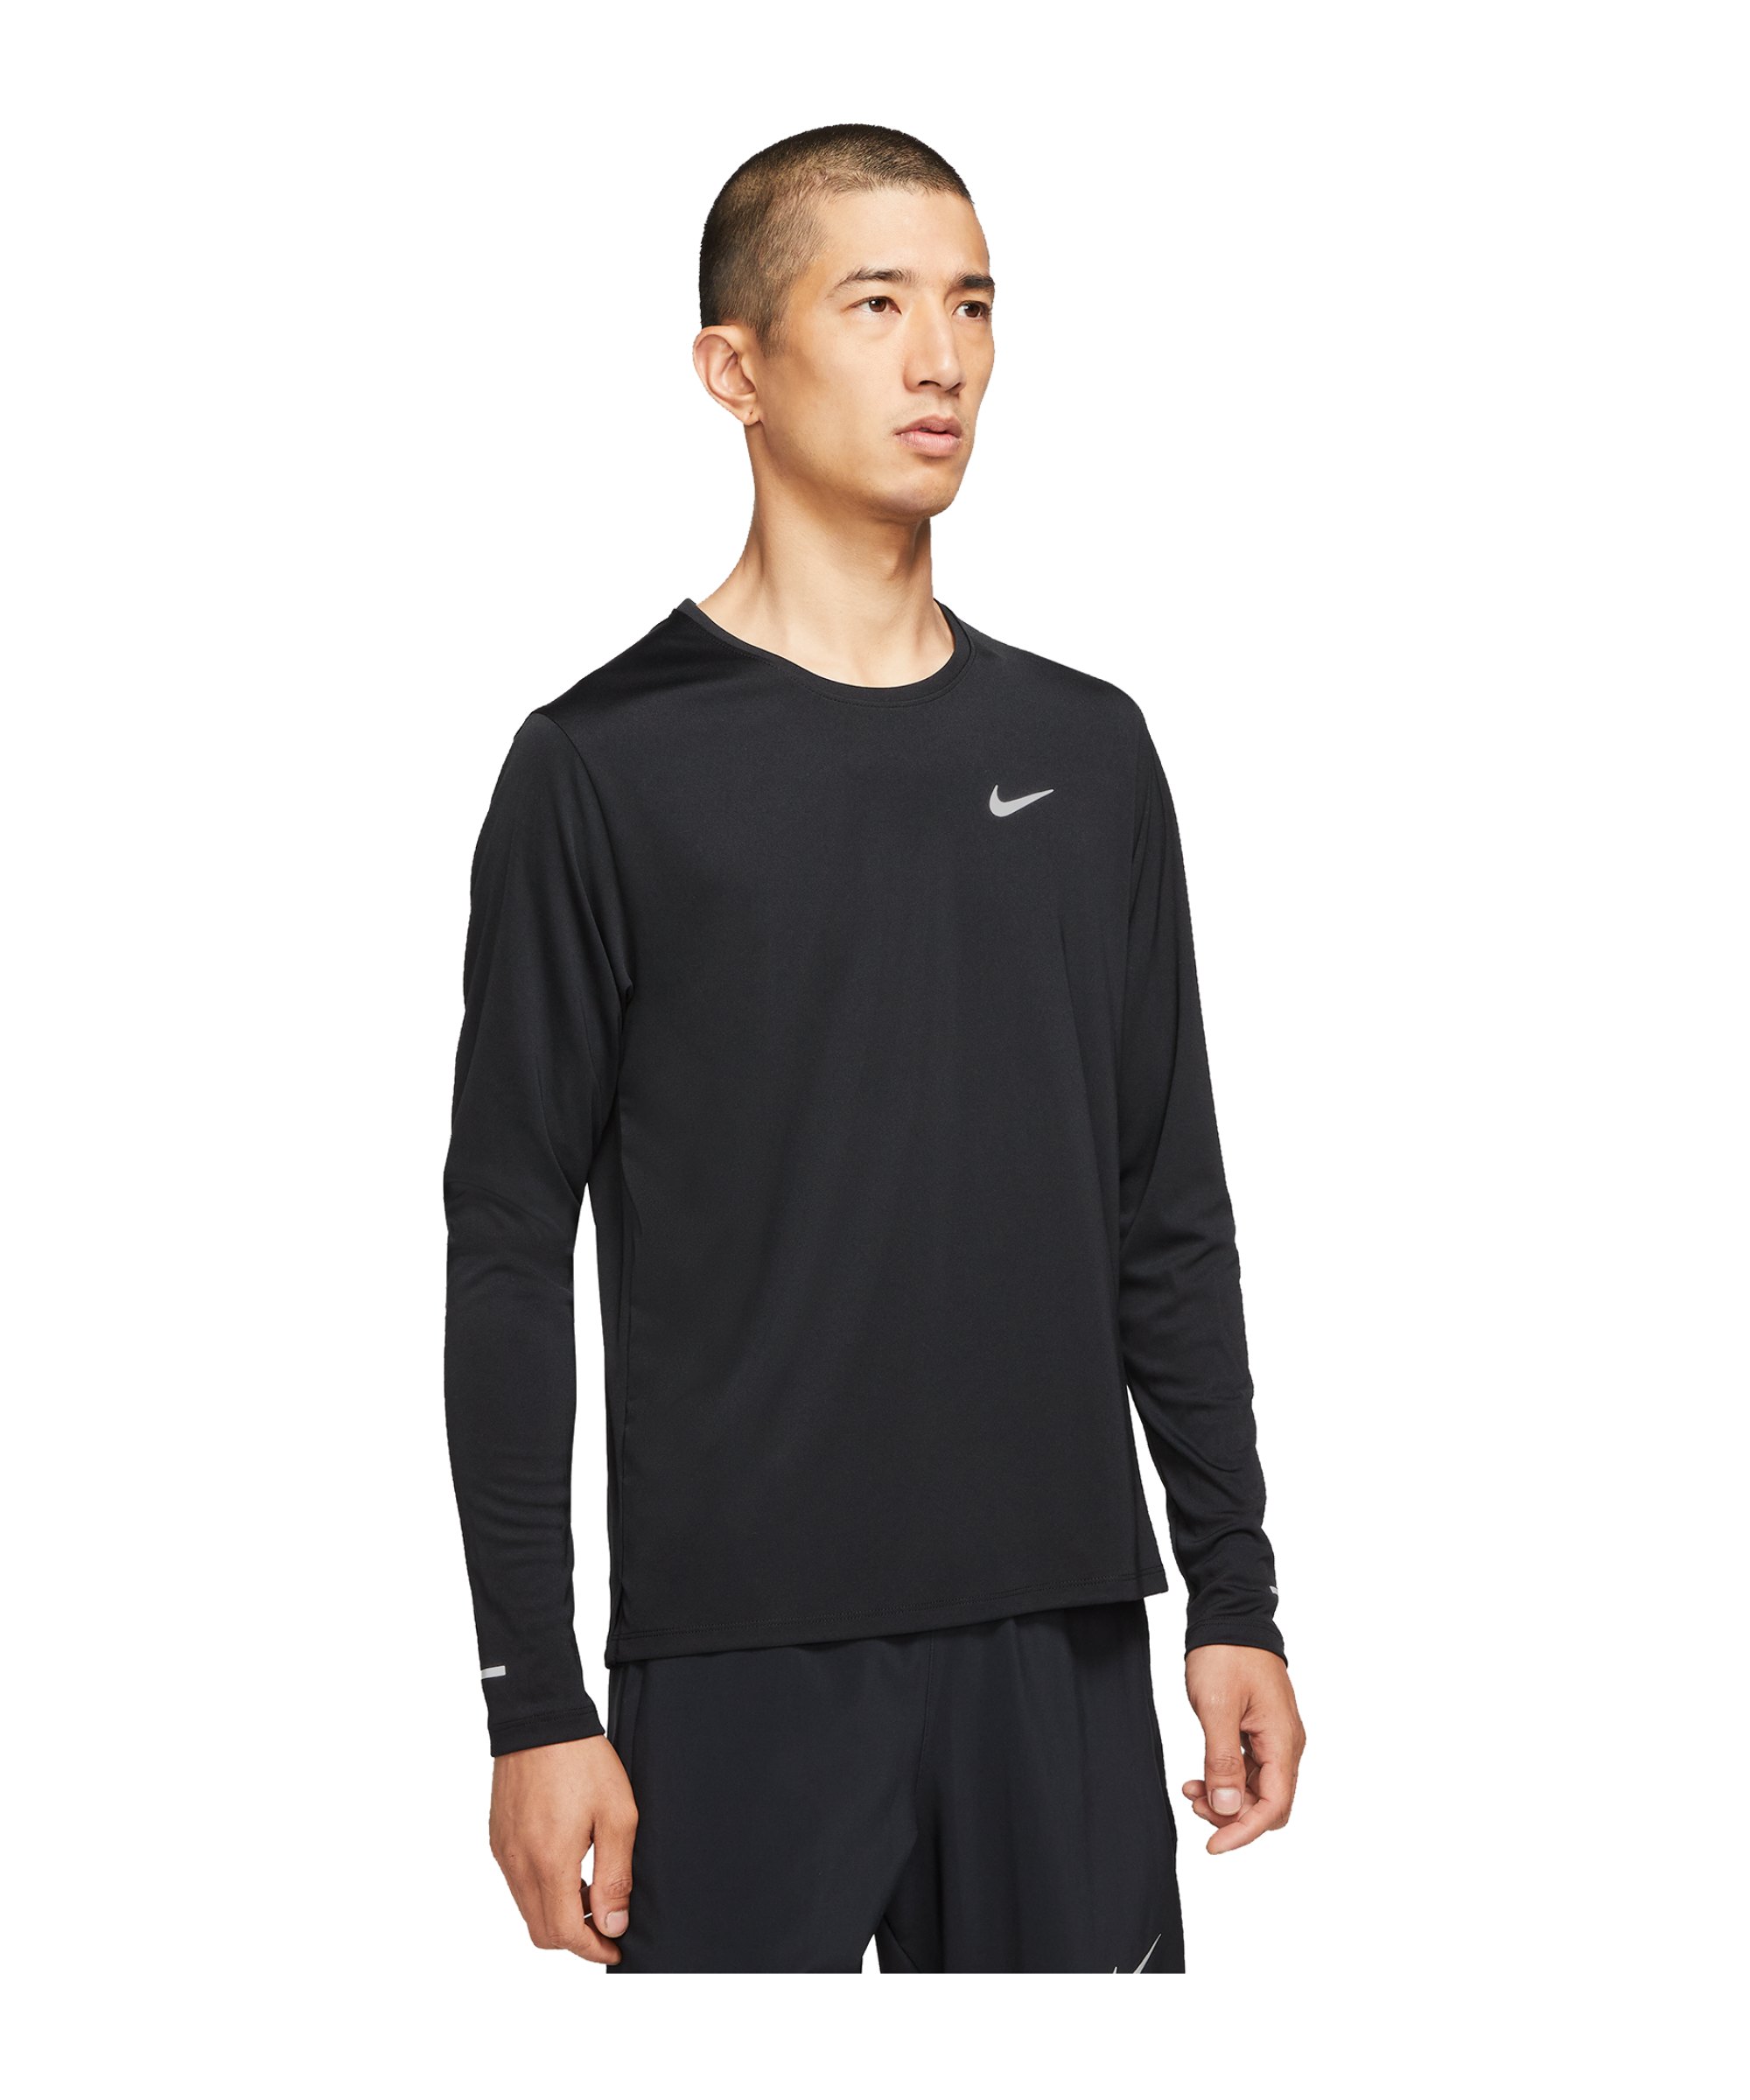 Nike Miler Top langarm Running Schwarz F010 - schwarz